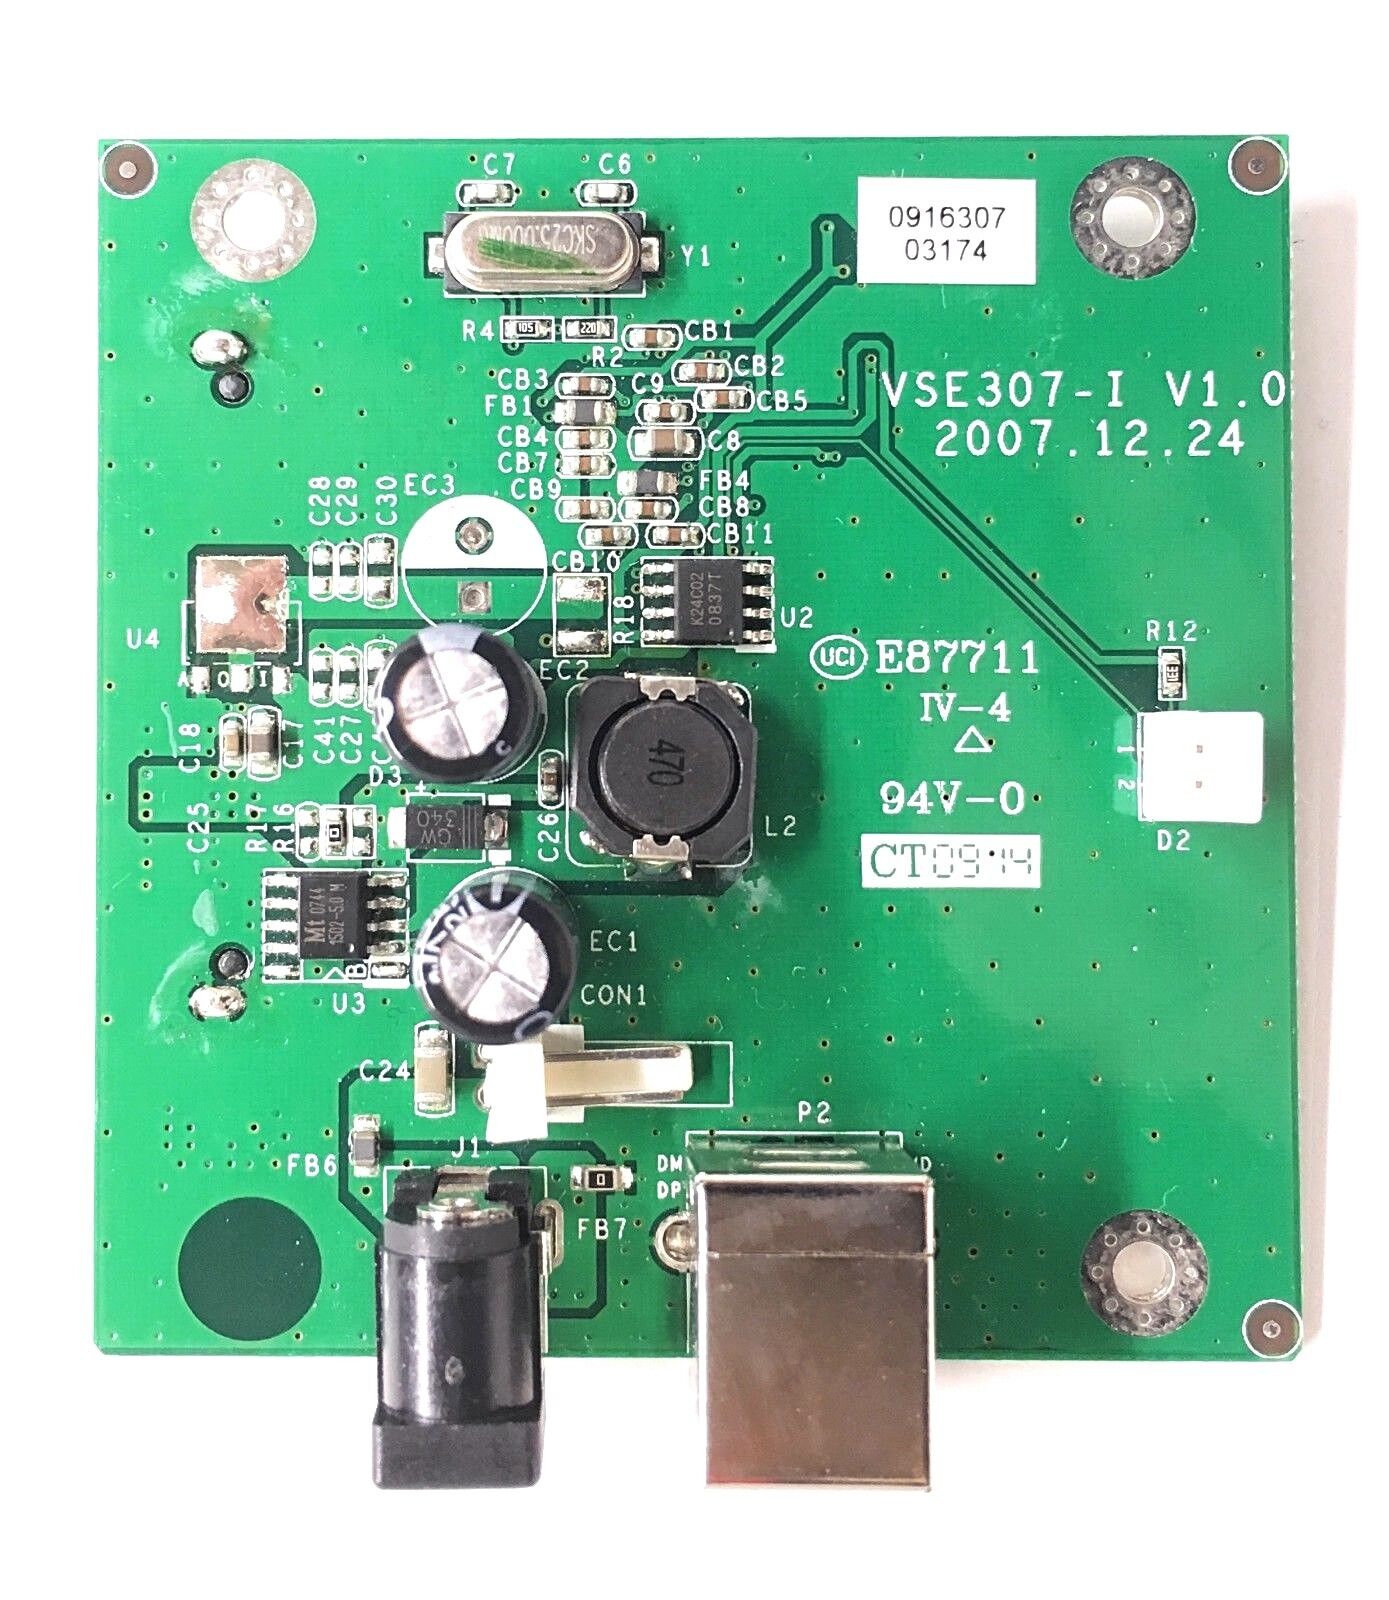 PCB ONLY Hitachi E87711 94V-0 SATA to USB 2.0 ADAPTER E57-18